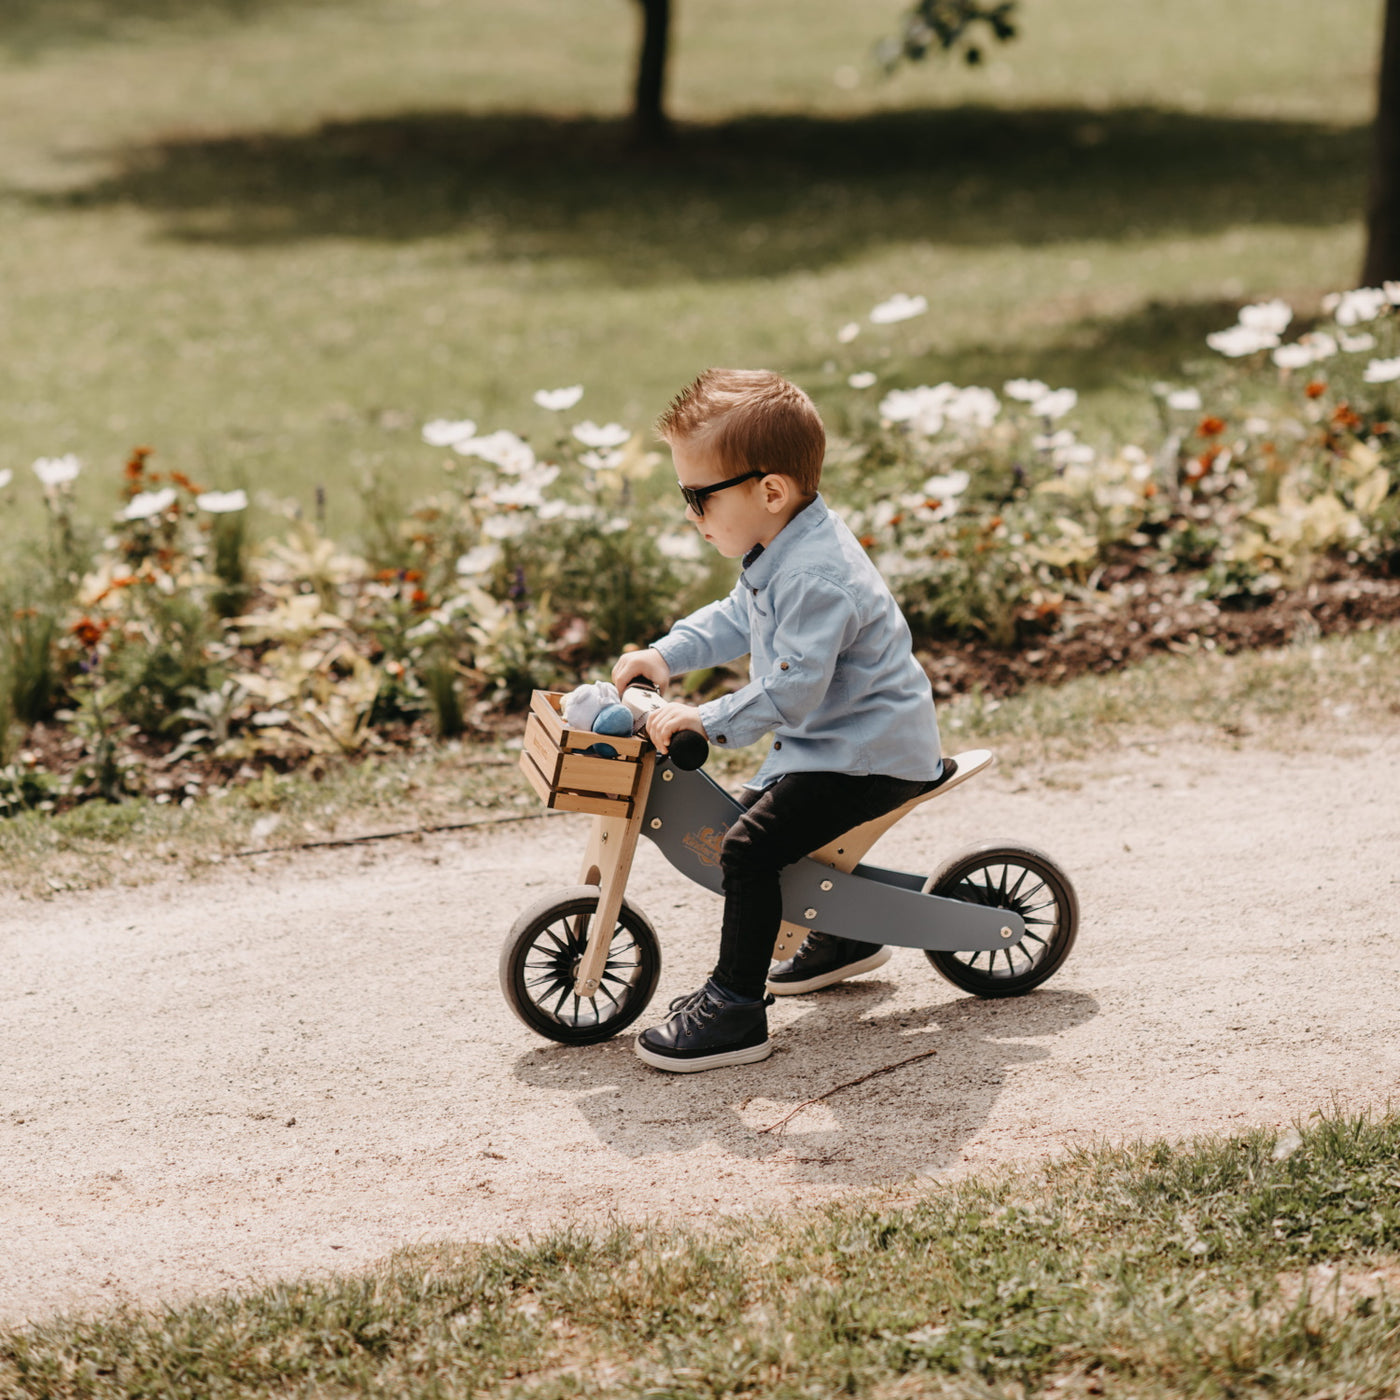 Kinderfeets | Tiny Tot Plus Trike/Balance Bike - Slate Blue - Belly Beyond 